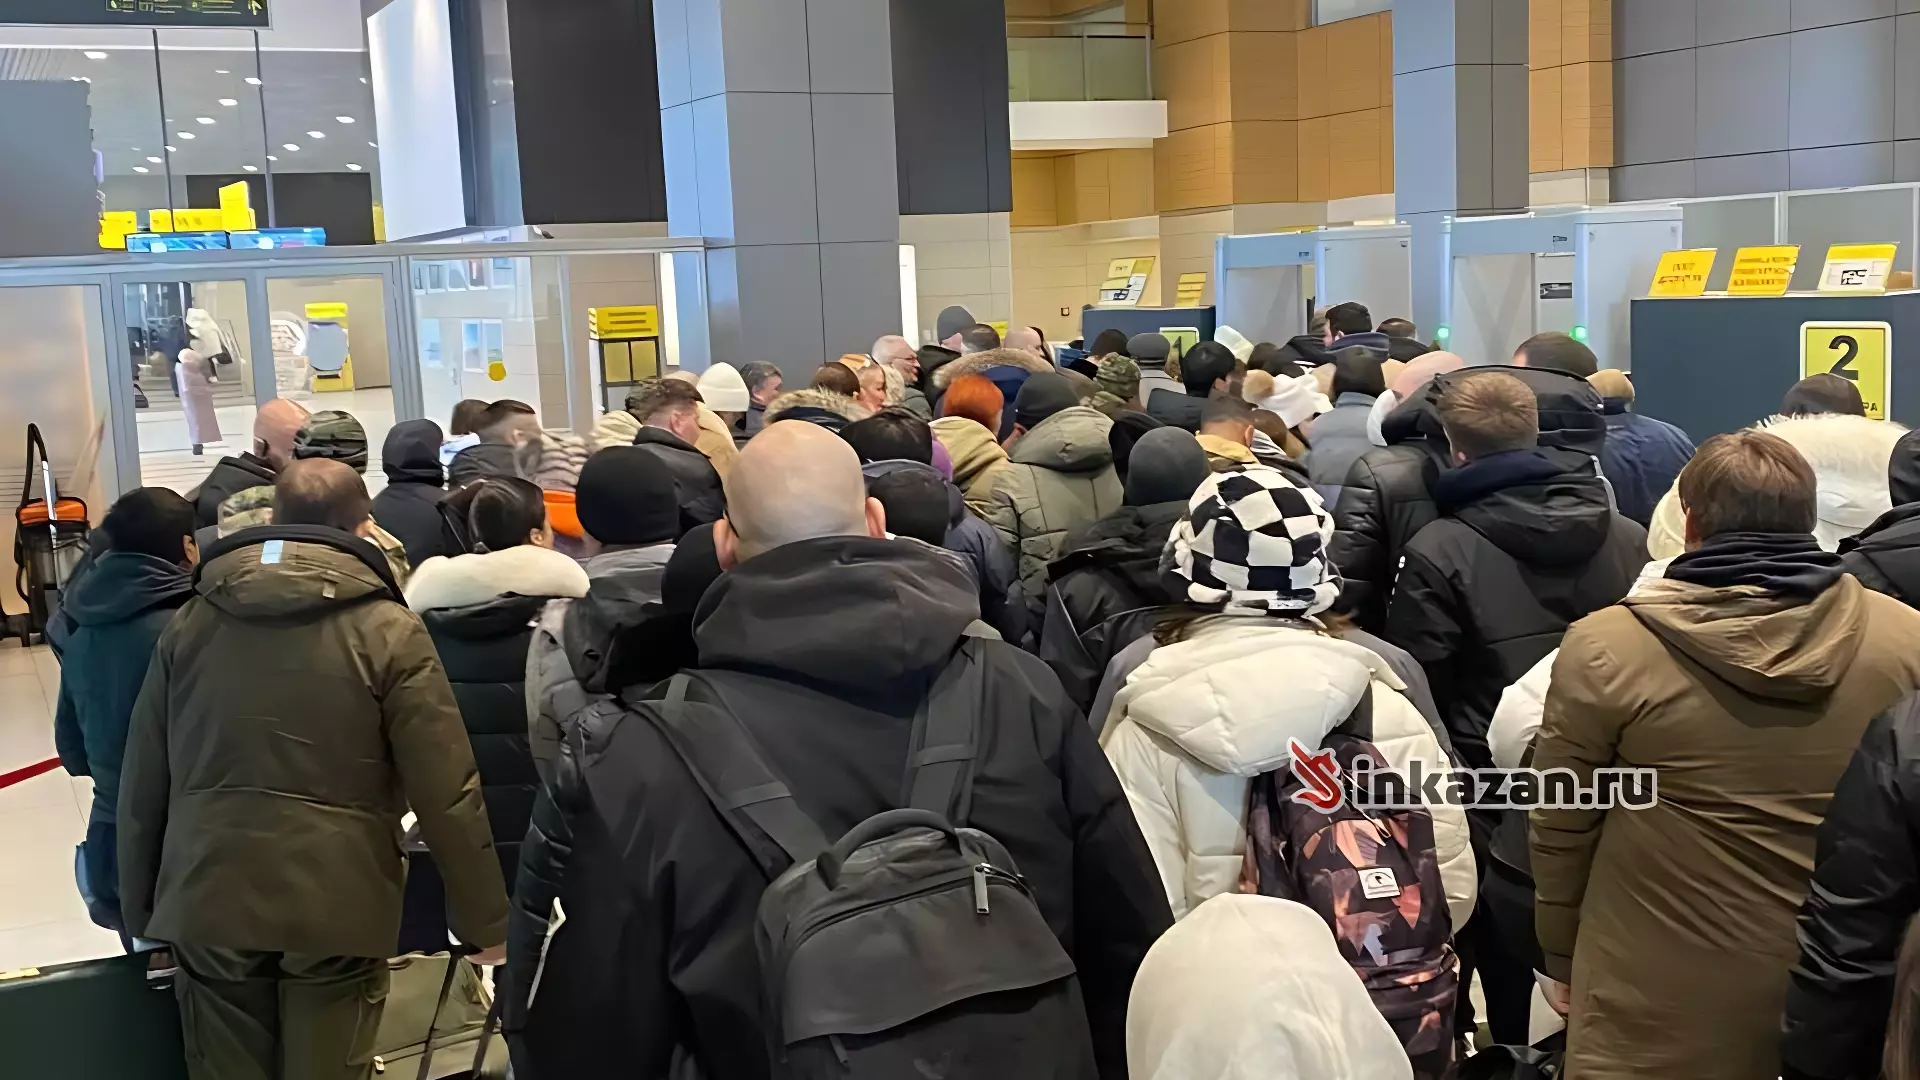 Пассажиры казанского аэропорта пожаловались на очереди при досмотре